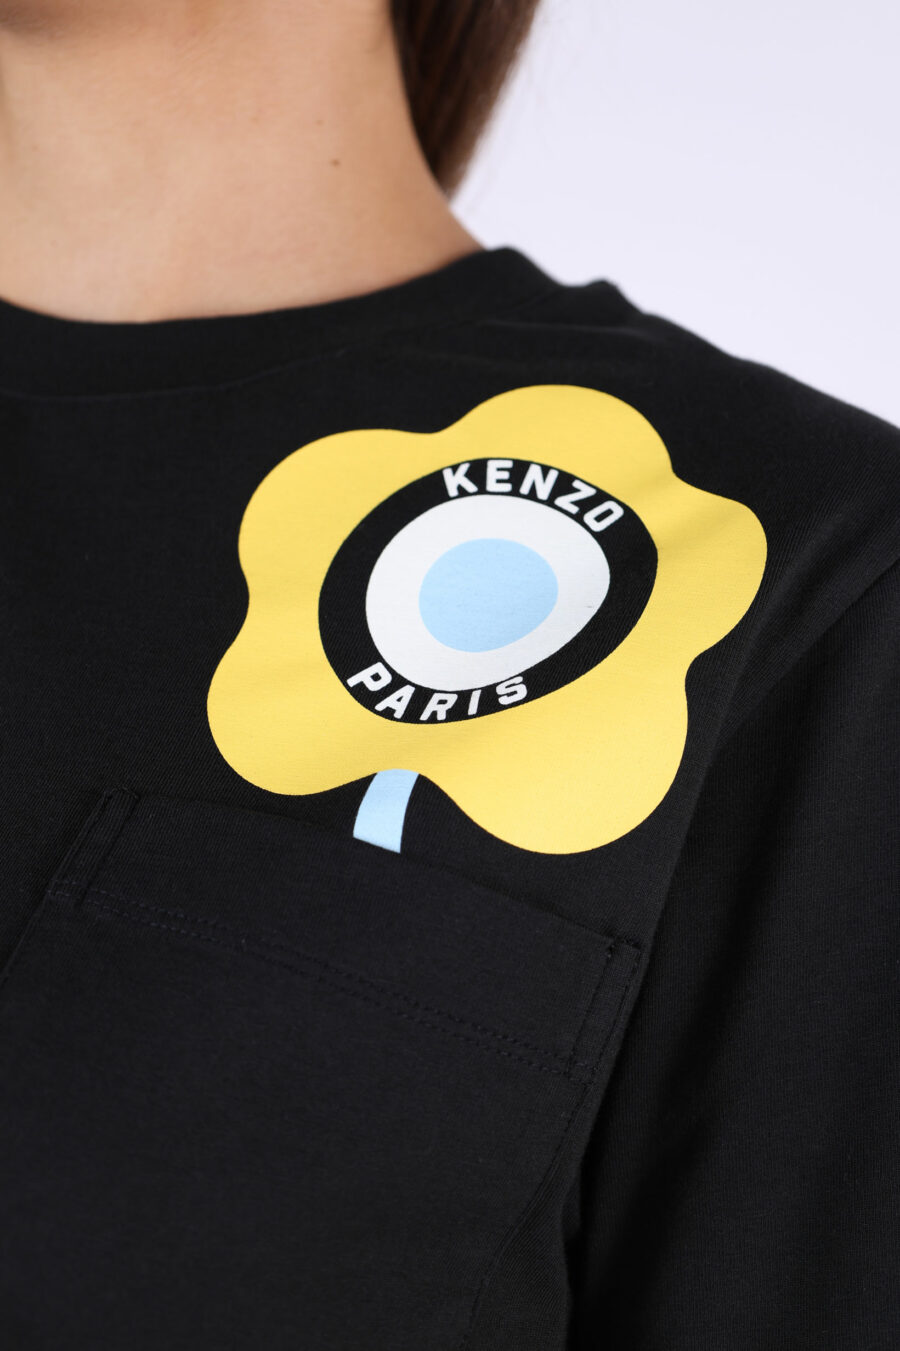 Camiseta negra con logo amarillo "kenzo target" - 361223054662202016